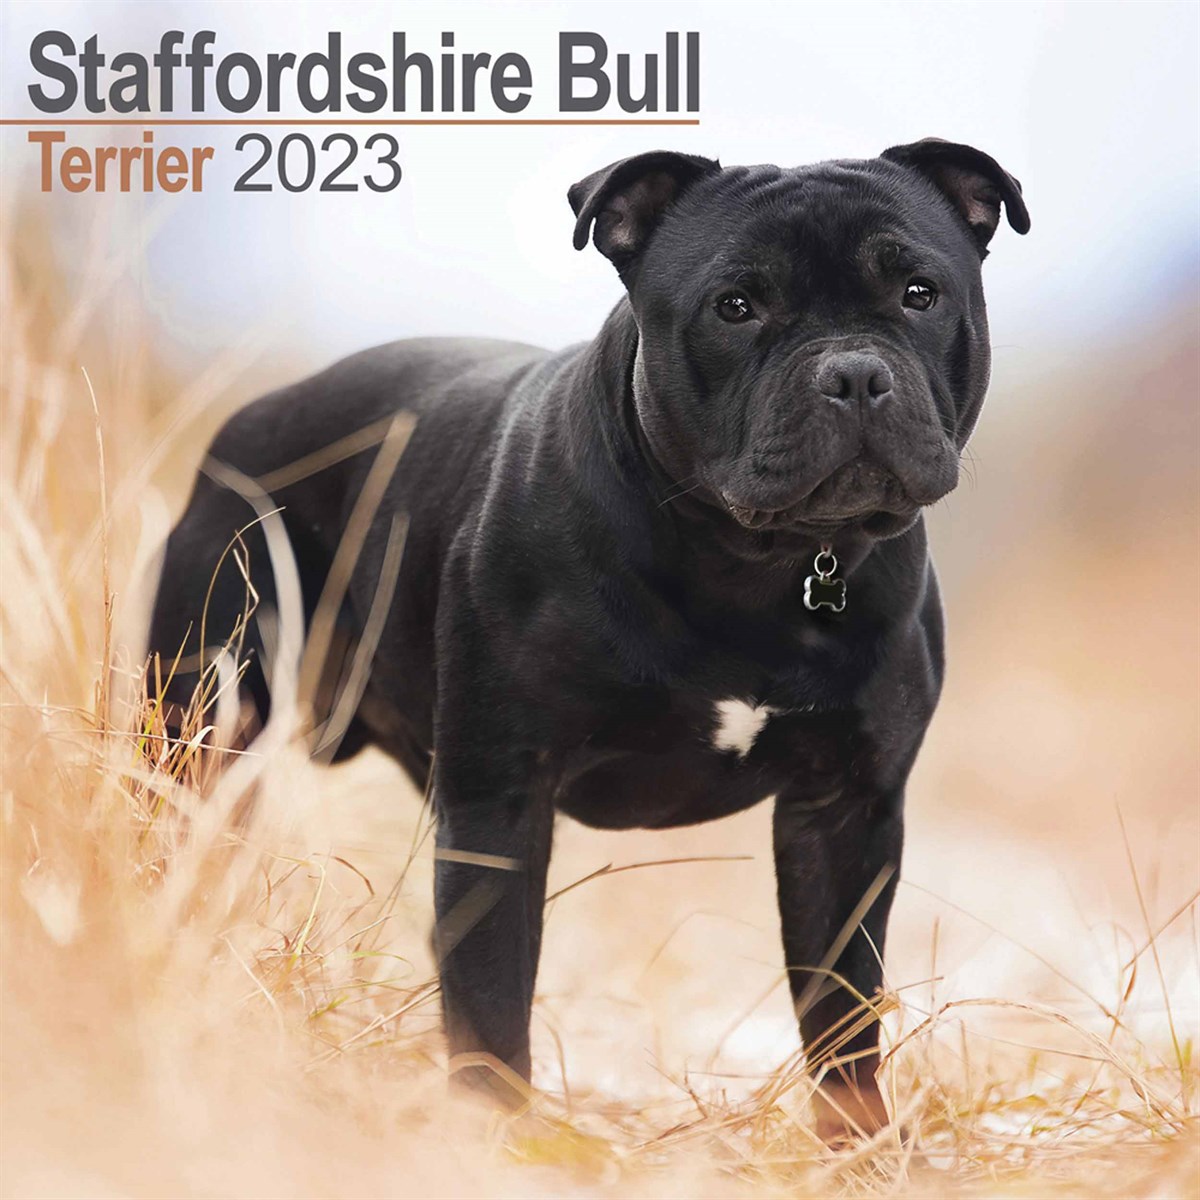 Staffordshire Bull Terrier 2023 Calendars